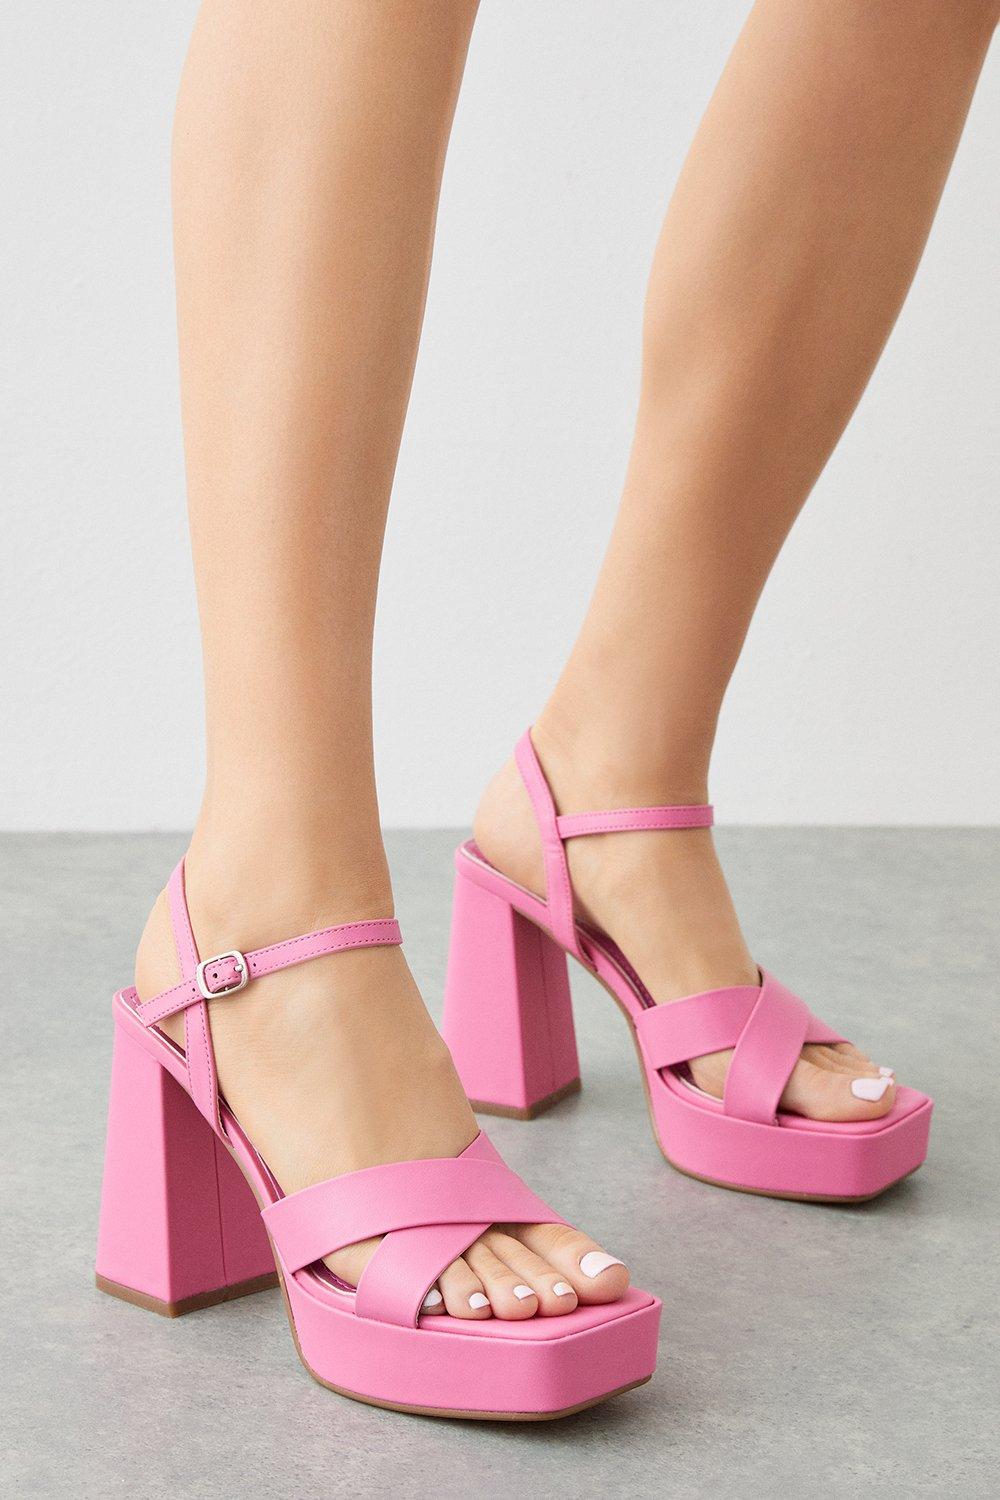 Women's Tia Cross Strap Platform Heel Sandals - pink - 3